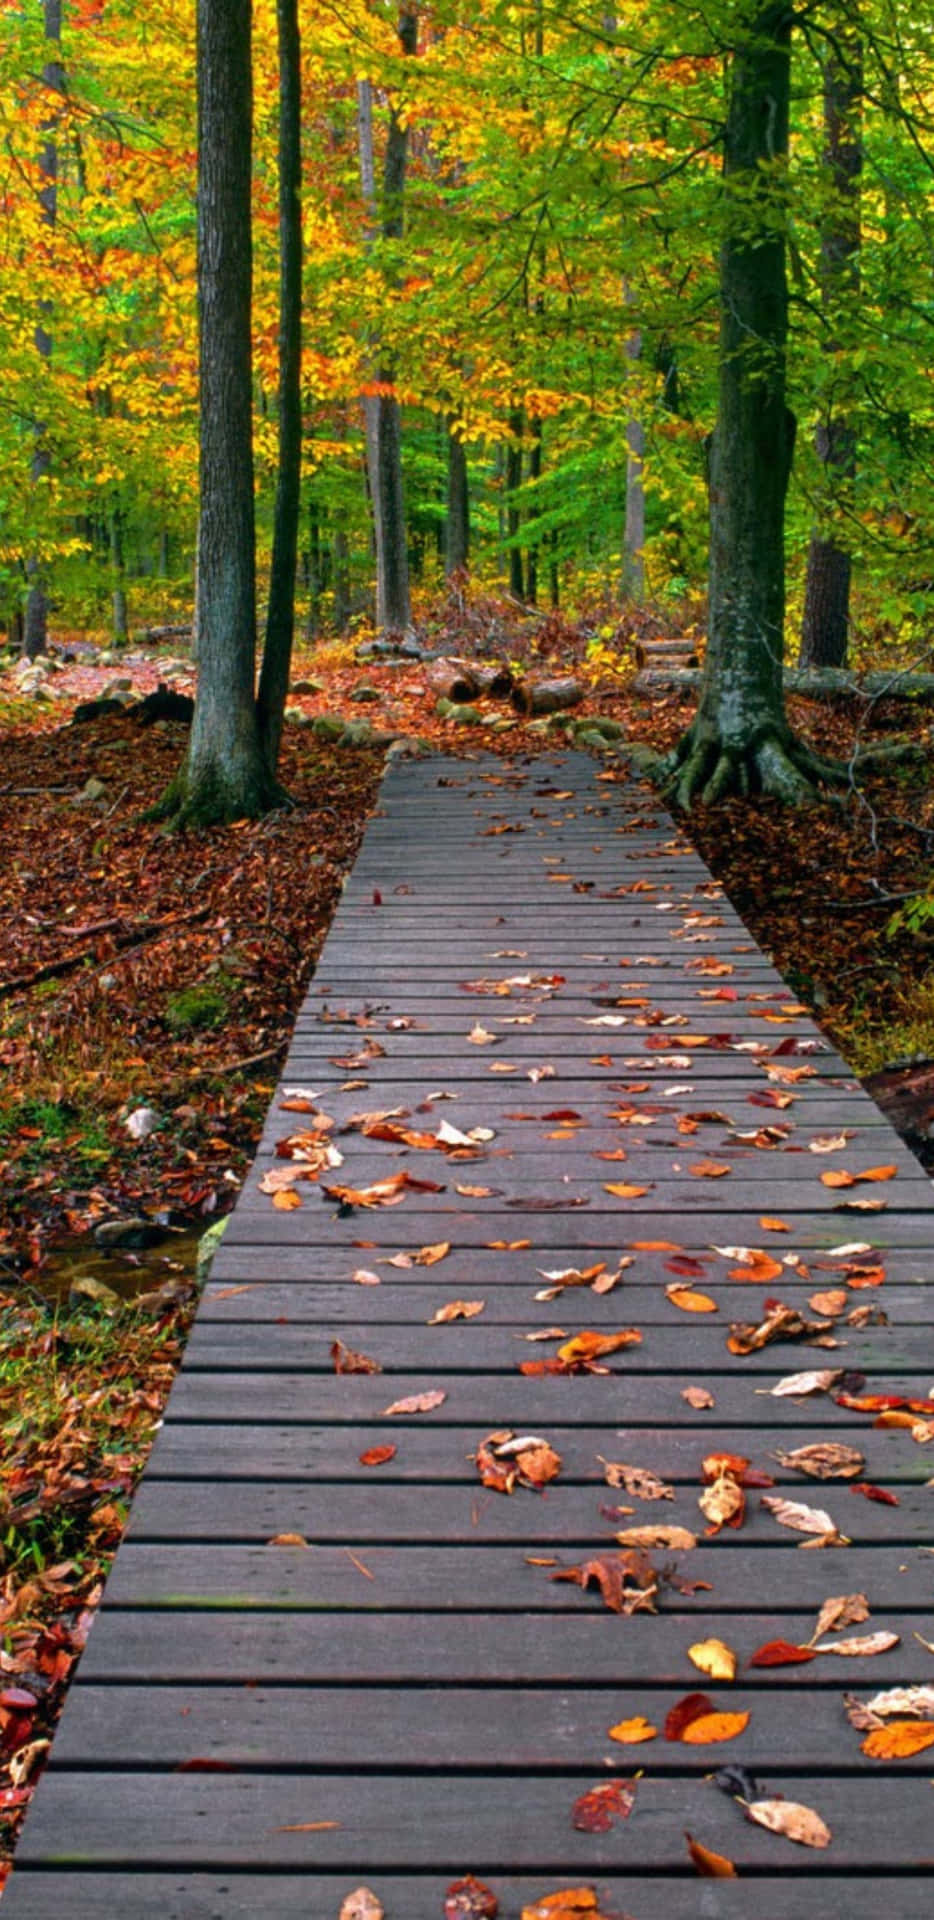 Pixel3xl Leerer Holzweg Im Herbst-hintergrund